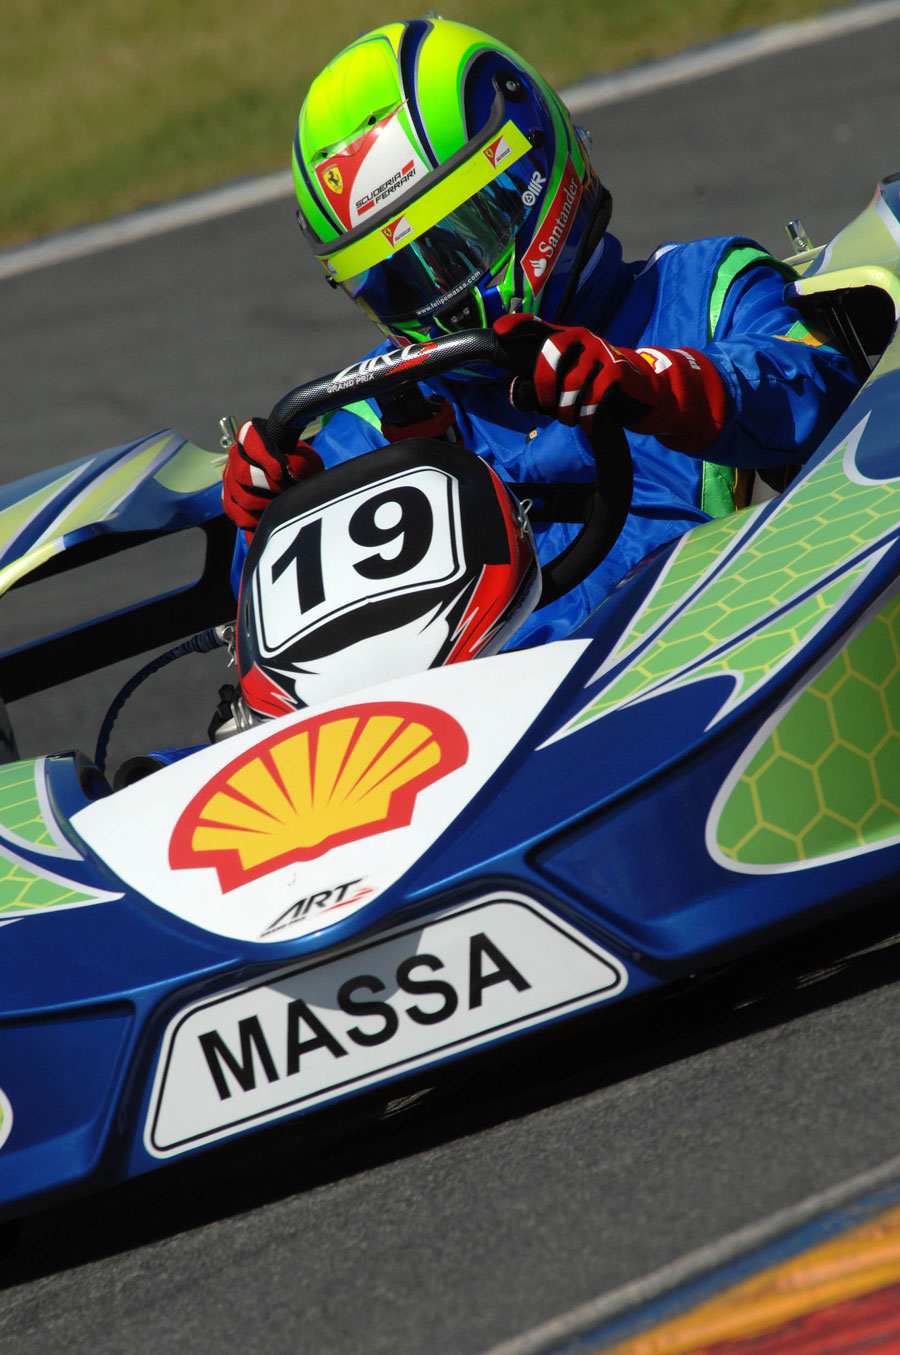 Felipe Massa during his karting challenge